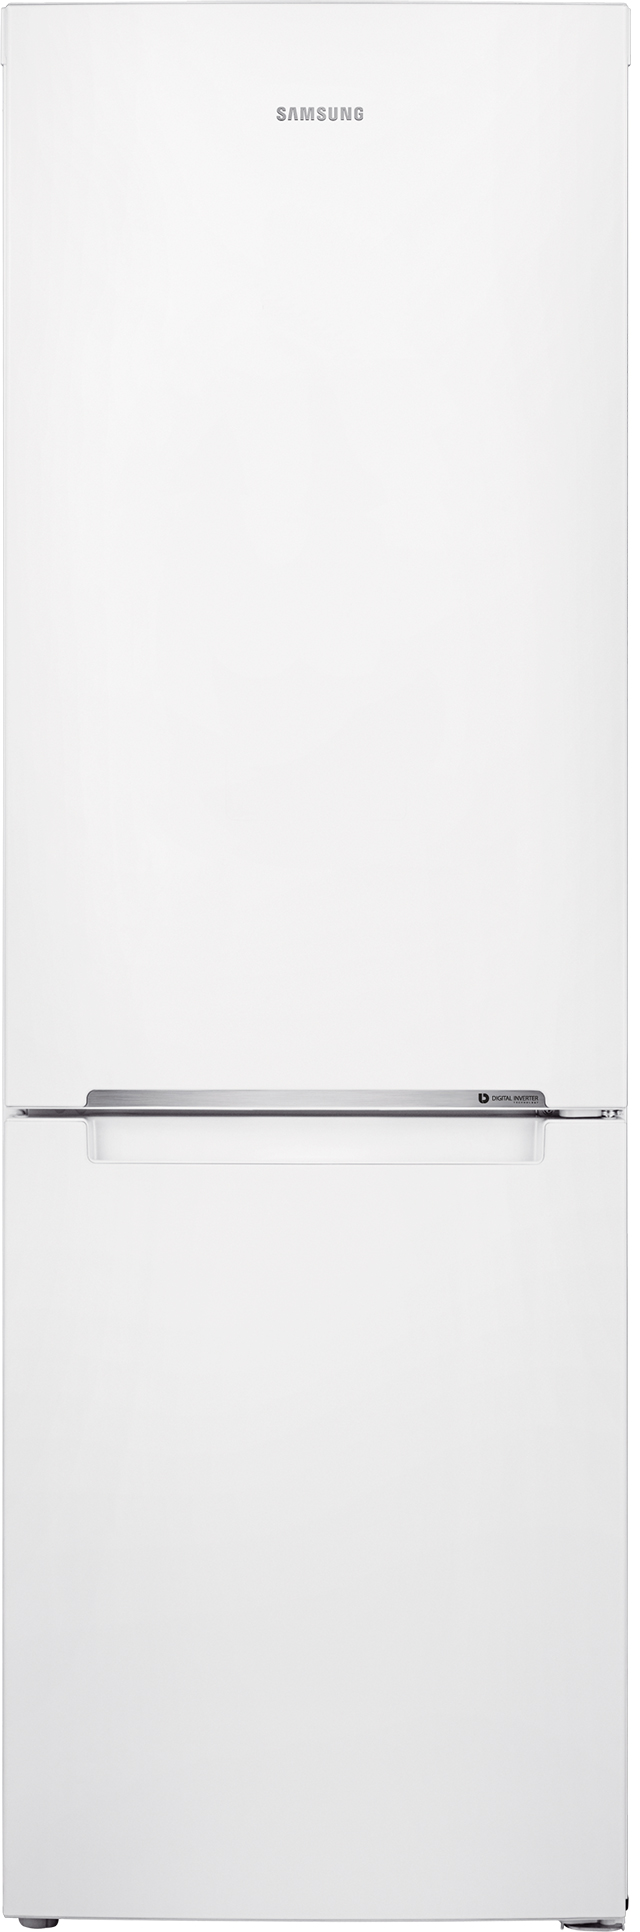 Холодильник Samsung RB33J3000WW/UA в интернет-магазине, главное фото